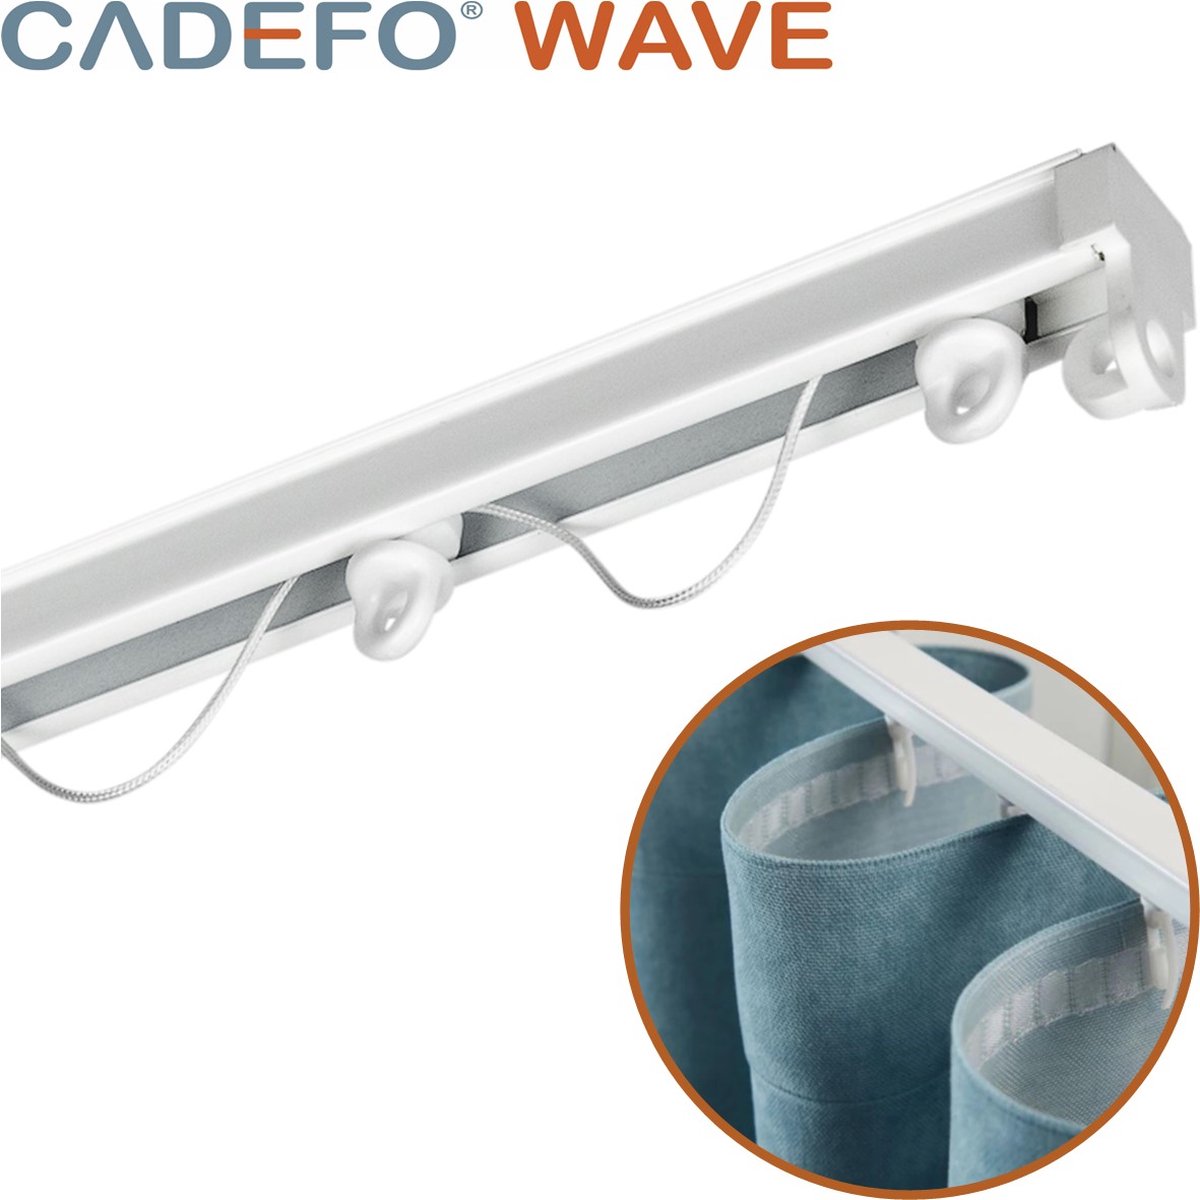 CADEFO WAVE (501 - 550 cm) Gordijnrails - Compleet op maat! - UIT 1 STUK - Leverbaar tot 6 meter - Plafondbevestiging - Lengte 544 cm